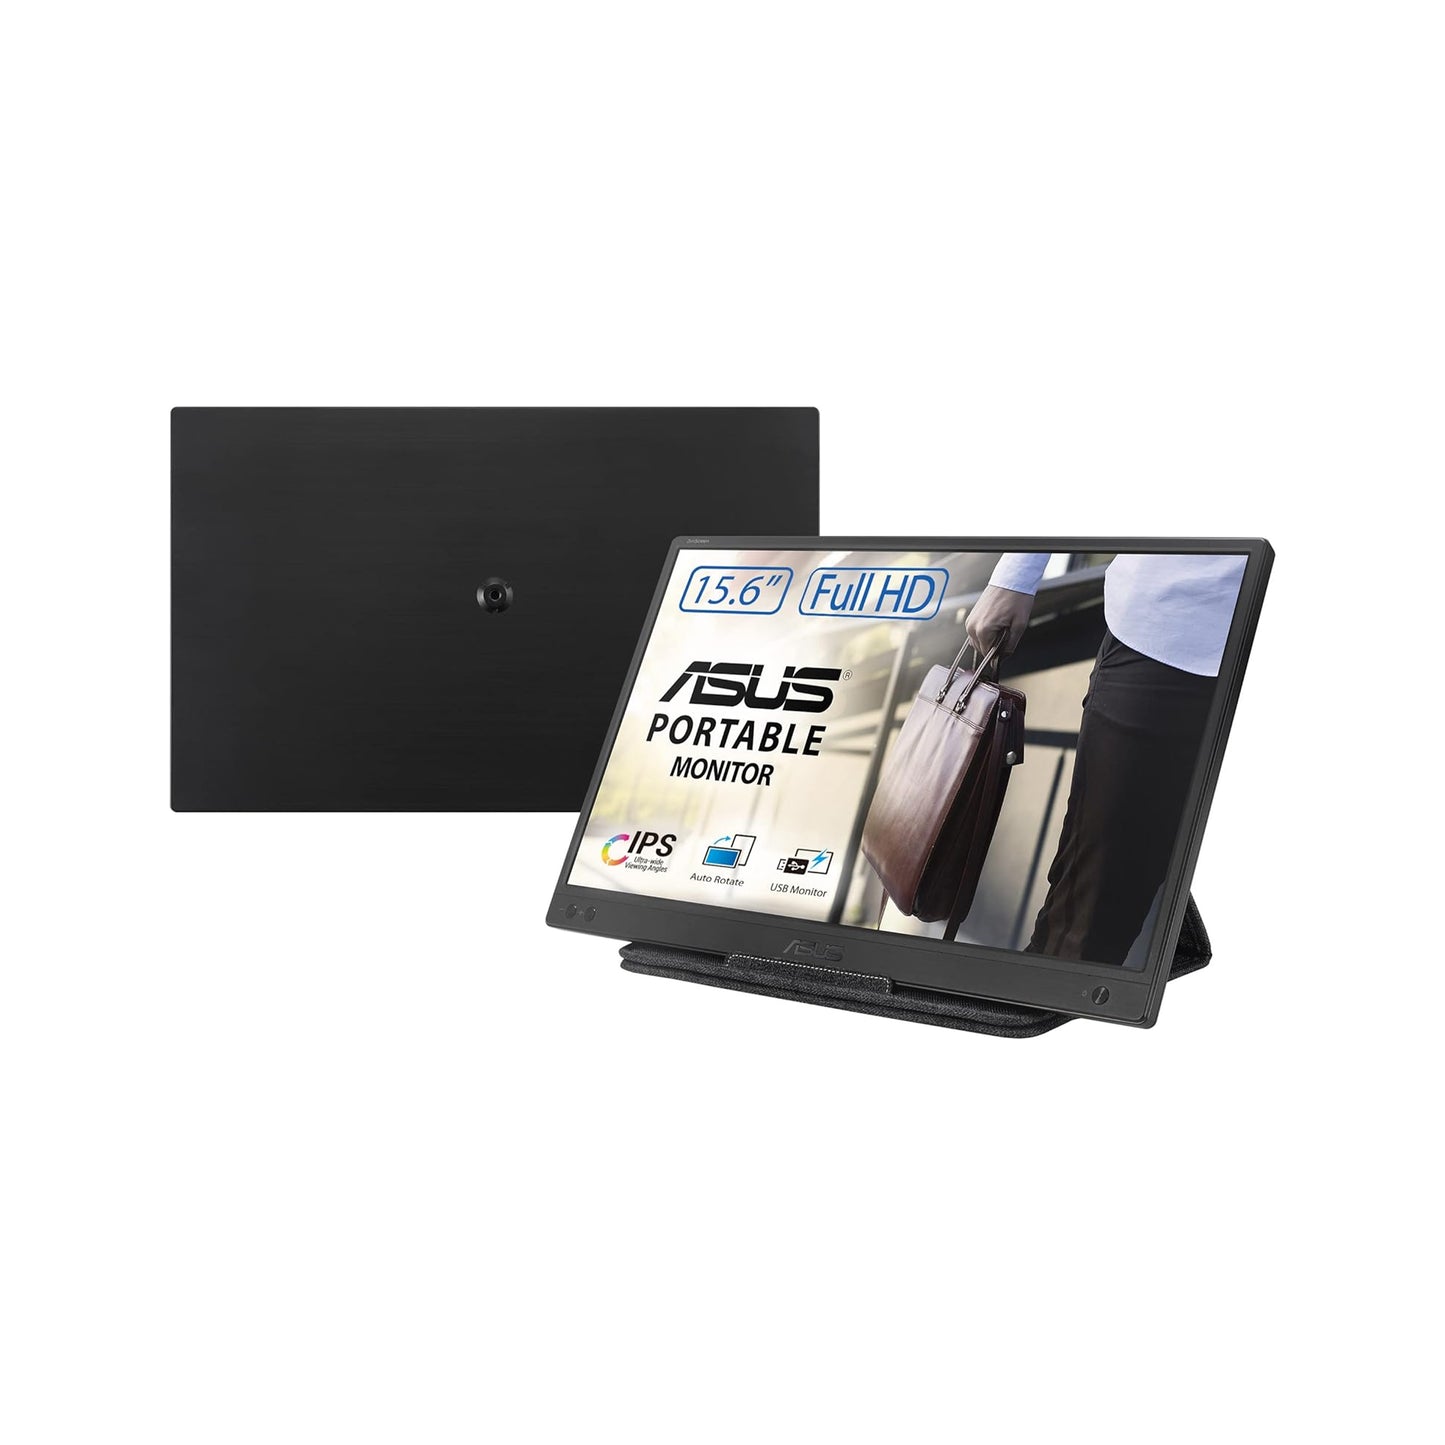 شاشة ASUS ZenScreen مقاس 15.6 بوصة بدقة 1080 بكسل (MB166B) - دقة عالية كاملة، IPS، USB3.2، سطح مضاد للتوهج، تعمل بمنفذ USB، خالية من الوميض، مرشح الضوء الأزرق، حامل ثلاثي القوائم، حافظة واقية، أسود 